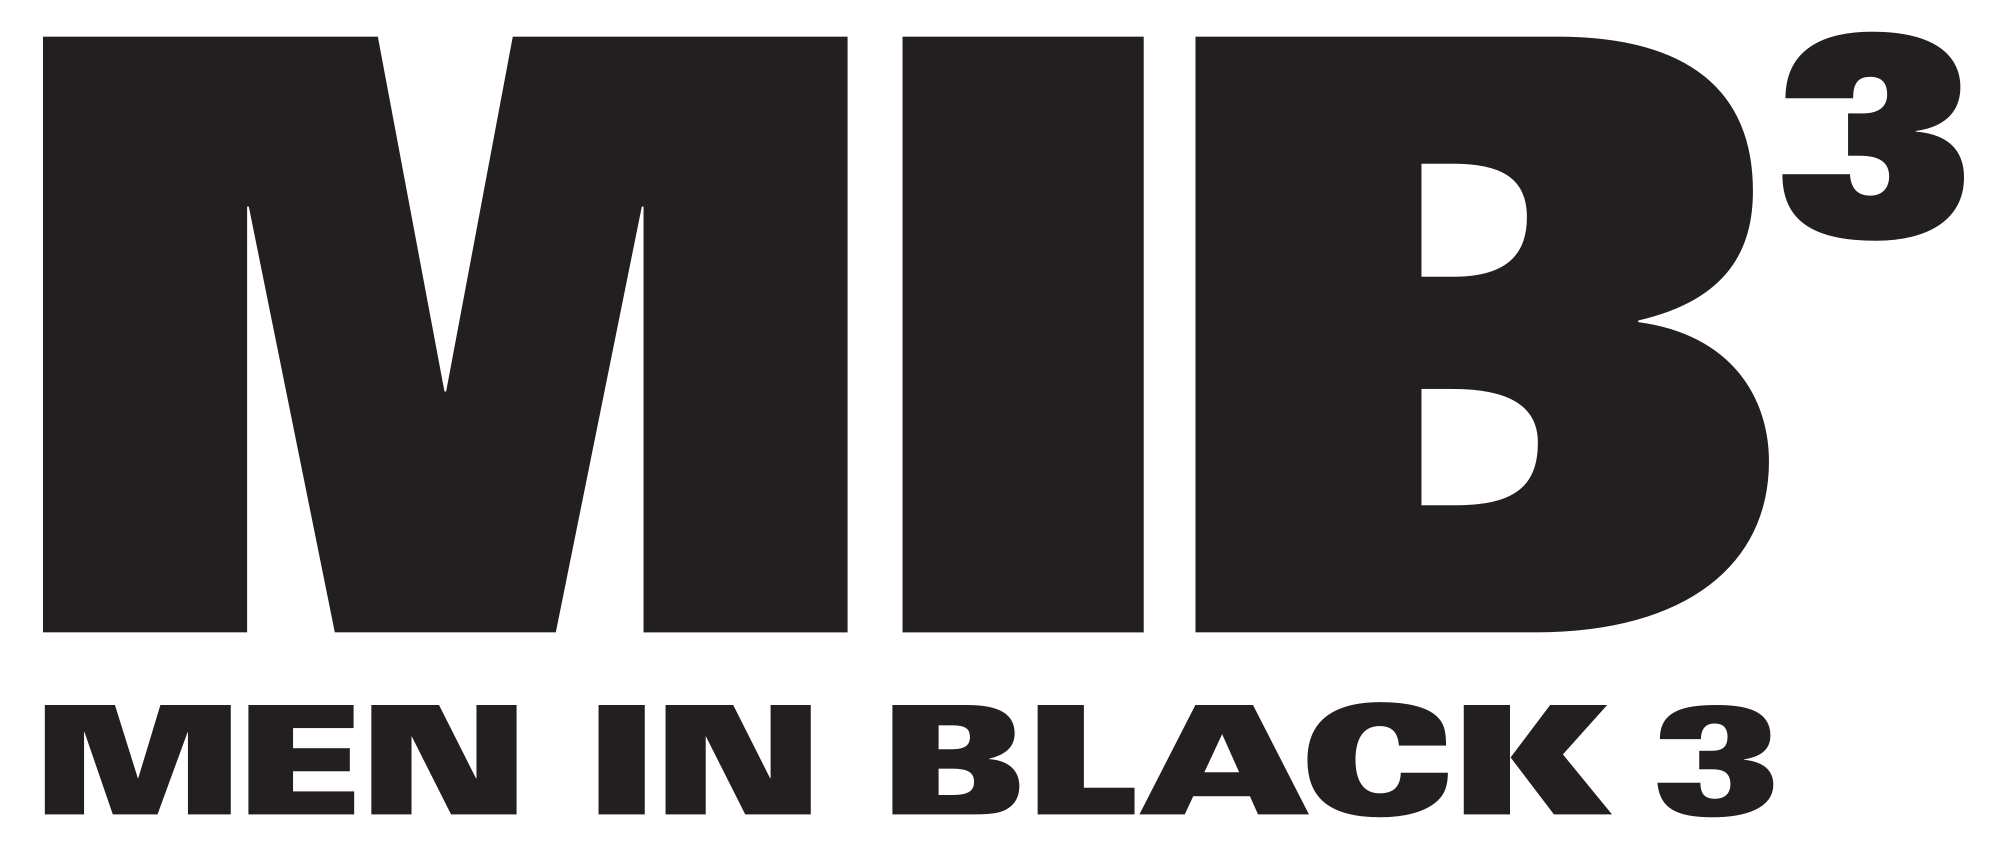 Men in Black 3 Logo - Men in black 3.svg